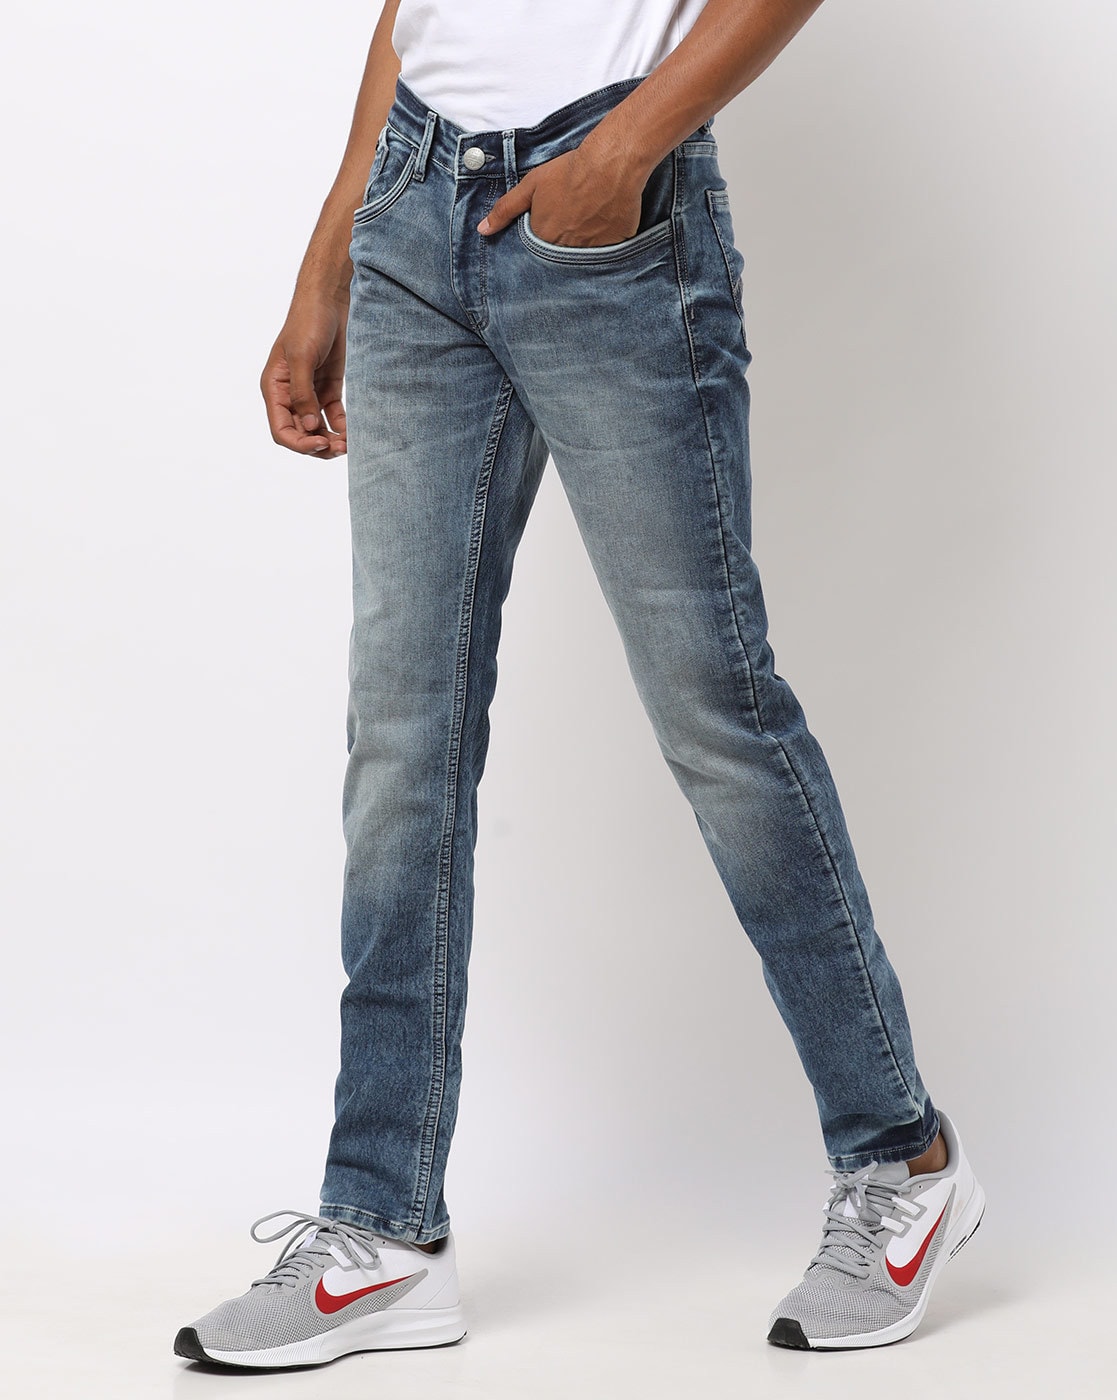 numero uno jeans price